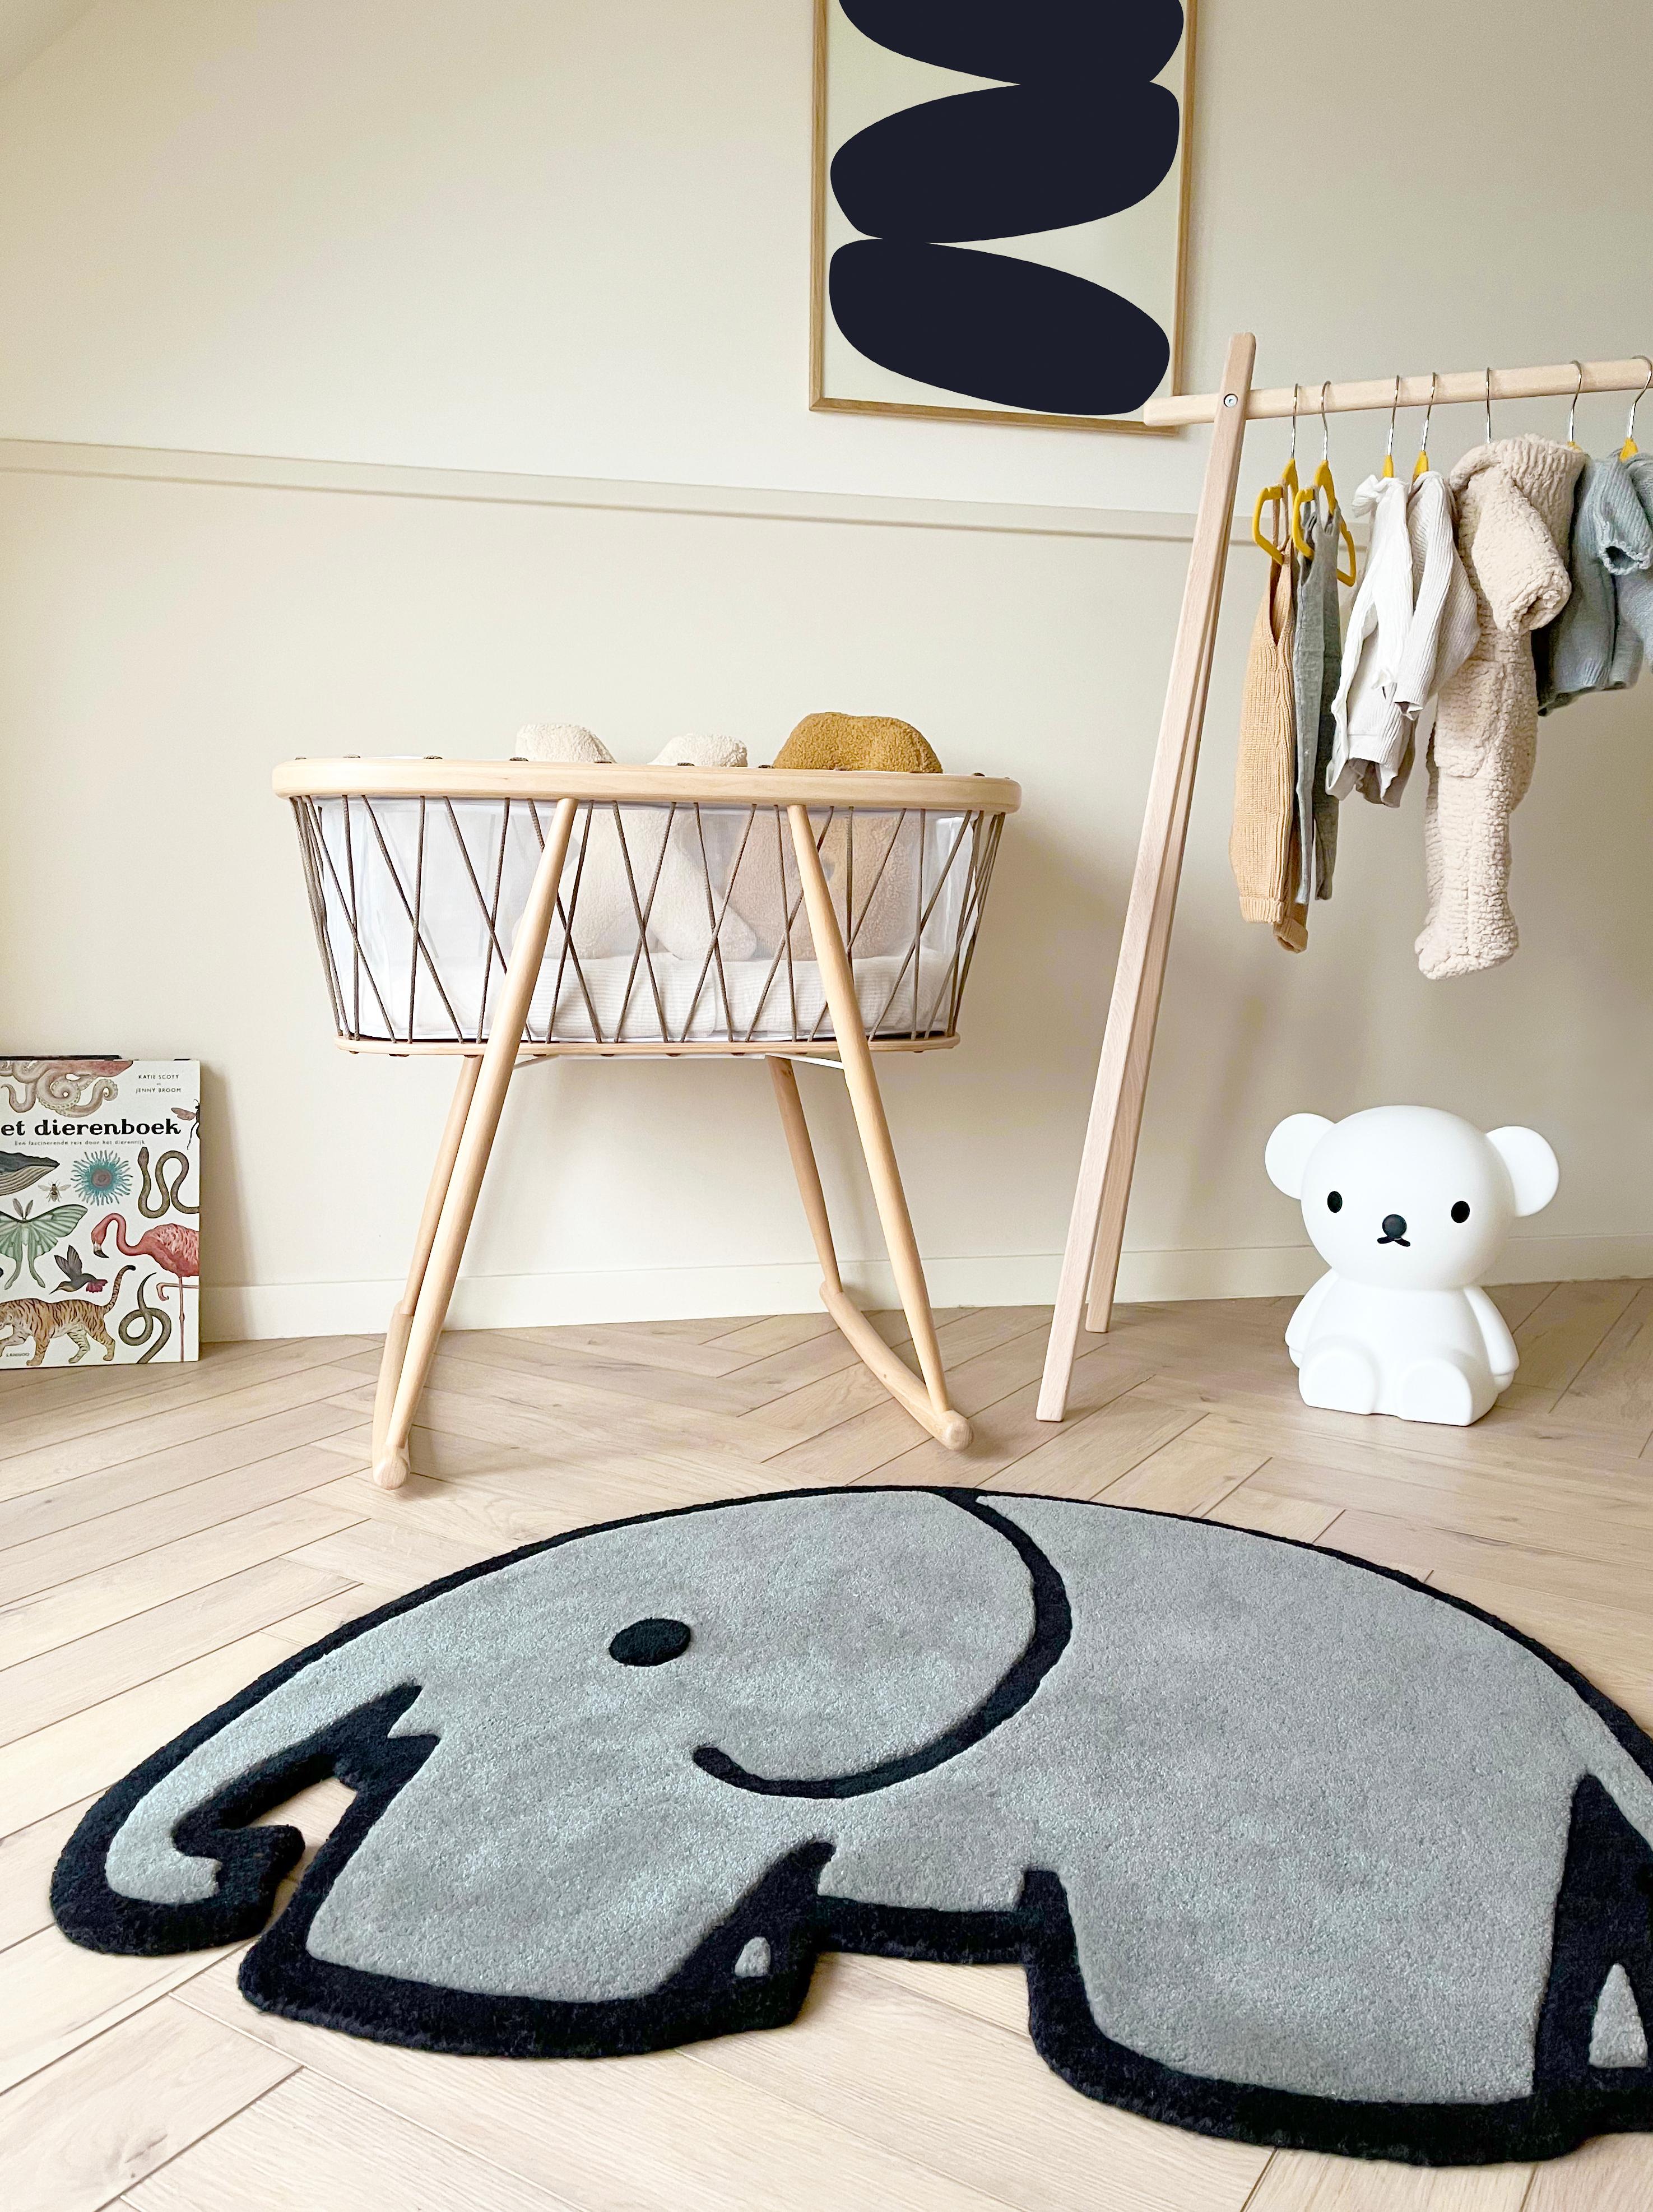 Gestalten Sie Ihr Kinderzimmer mit dem Elefantenteppich aus der miffy rug collection. Dieser niedliche, gar nicht so kleine Freund bringt eine verspielte und raffinierte Stimmung ins Kinderzimmer. Der Teppich ist in einem schönen Grauton gehalten